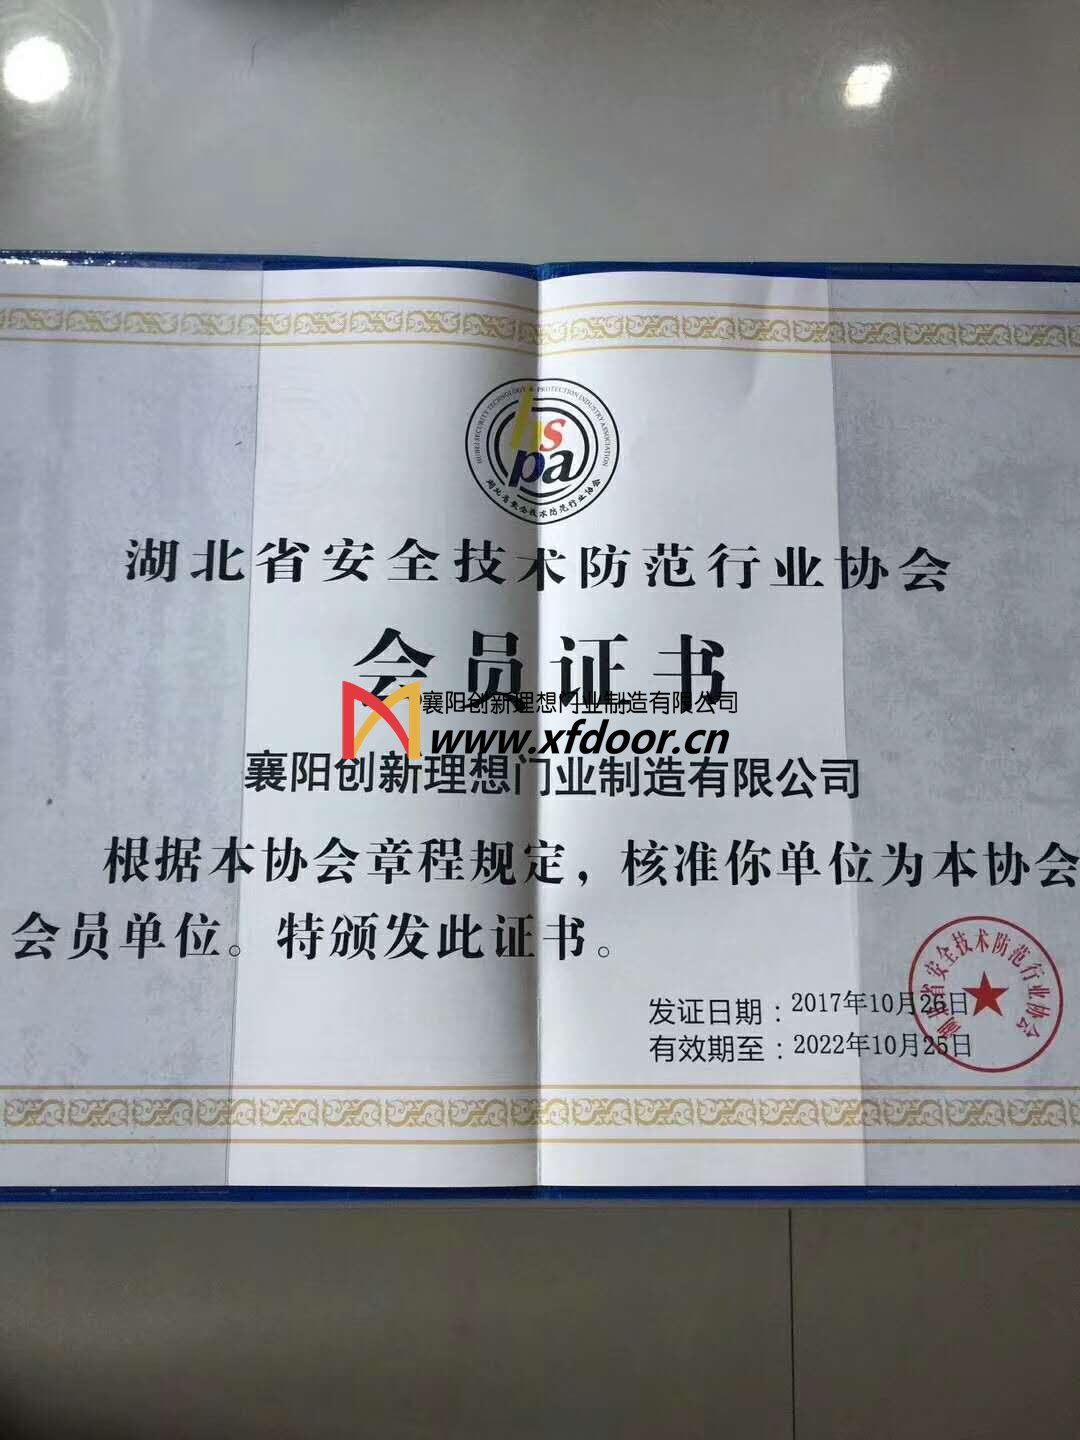 理想门业是湖北省安全技术防范行业协会会员